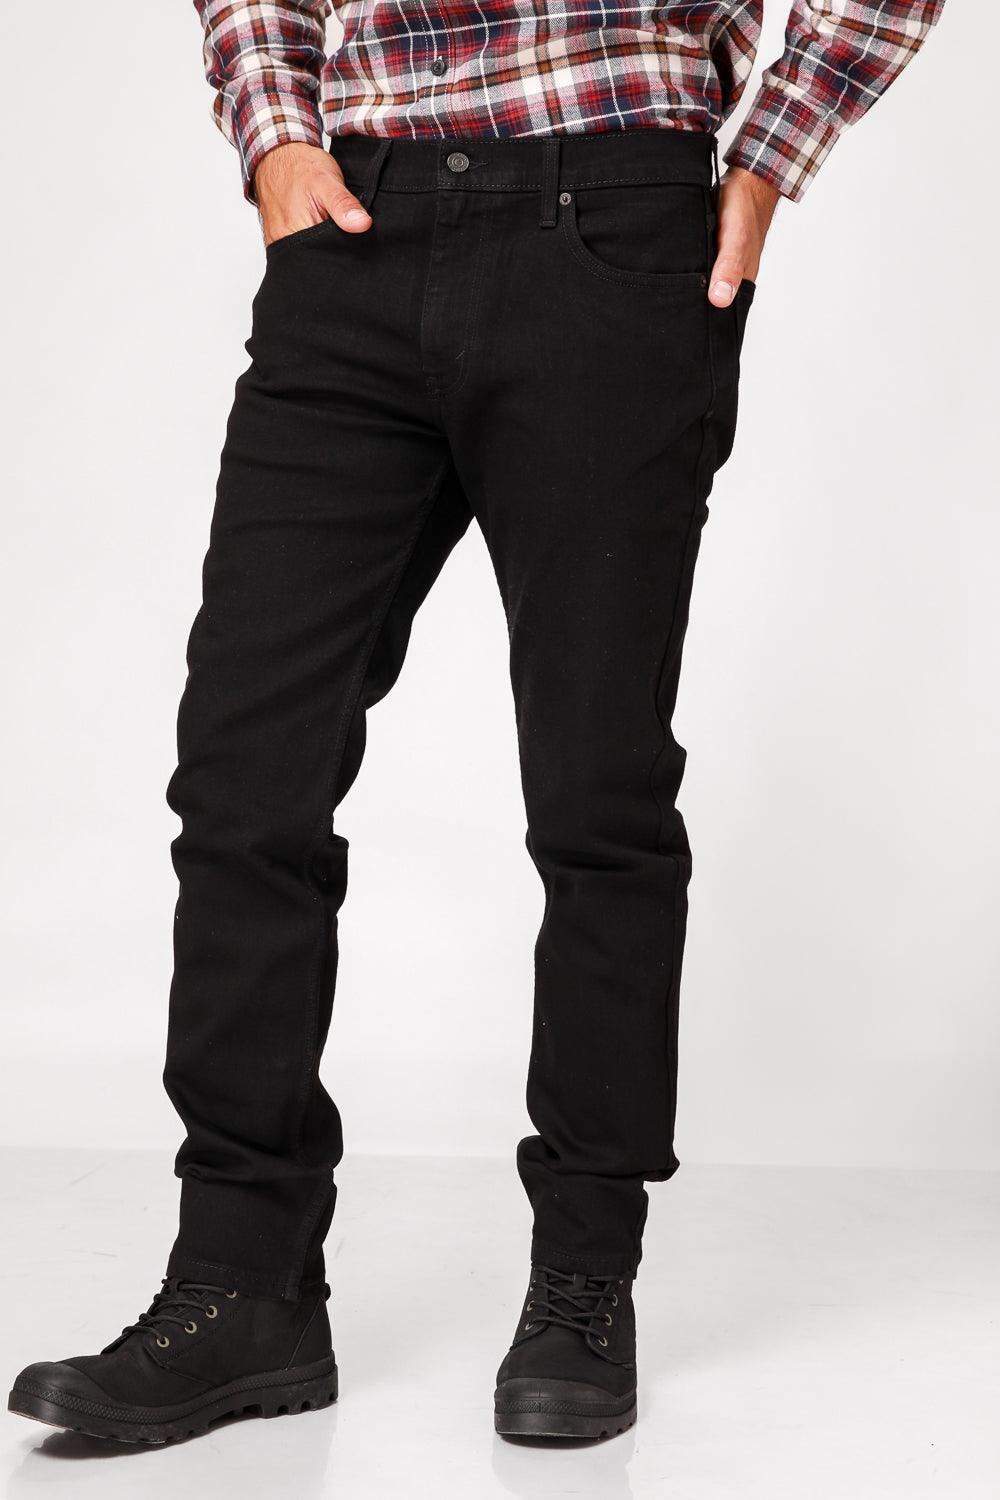 ג'ינס BLR MB 511 SLIM בצבע שחור - MASHBIR//365